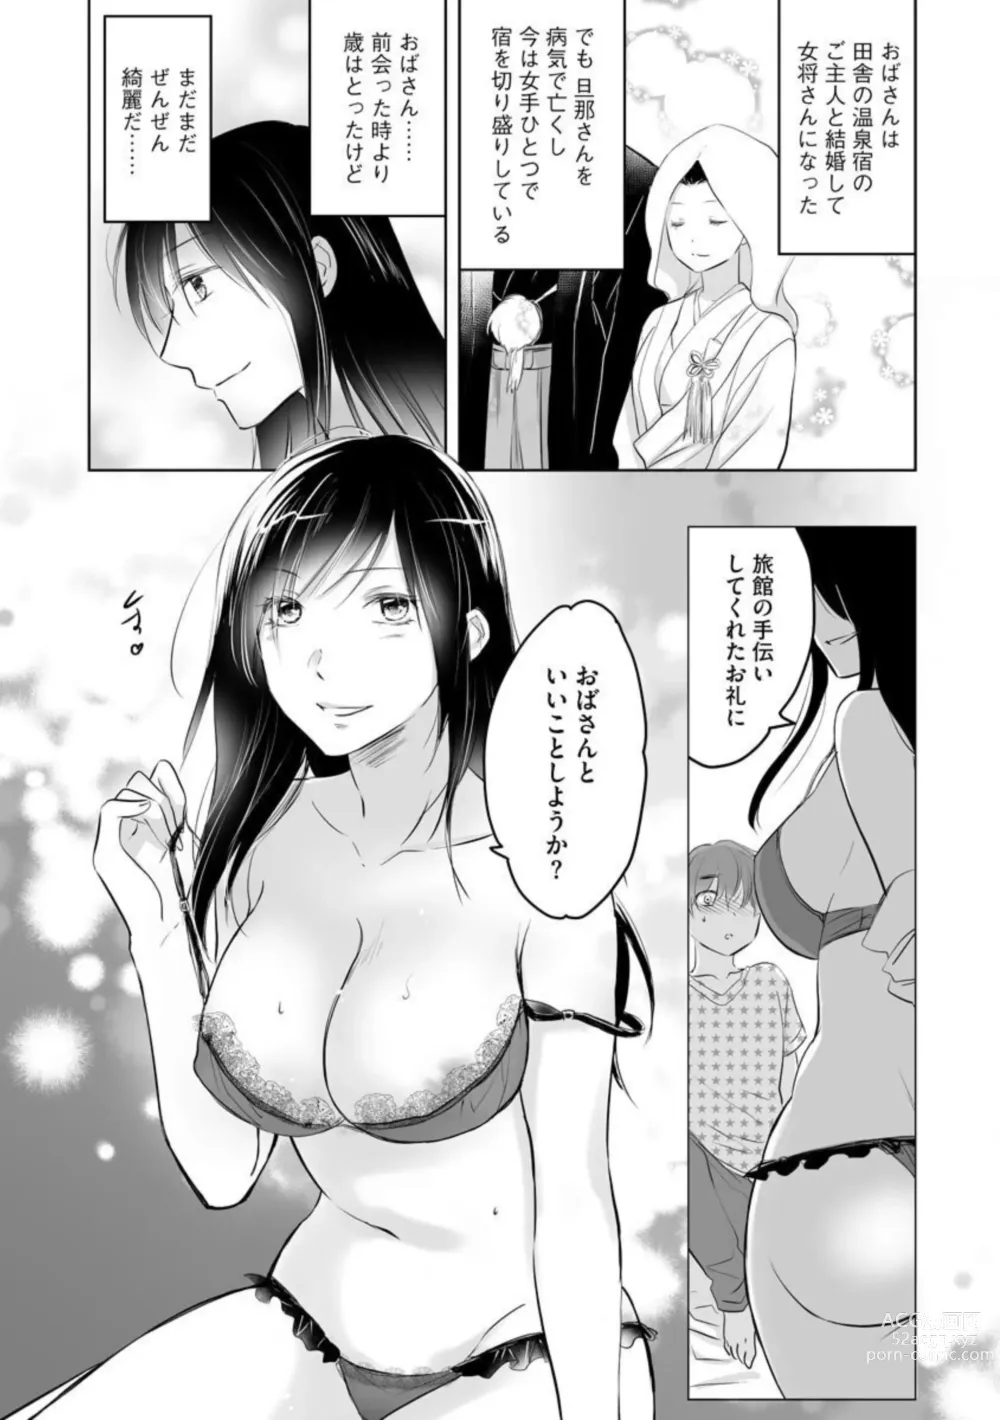 Page 6 of manga Nozoki ana oba to Boku no Himitsu no Natsuyasumi 1-2